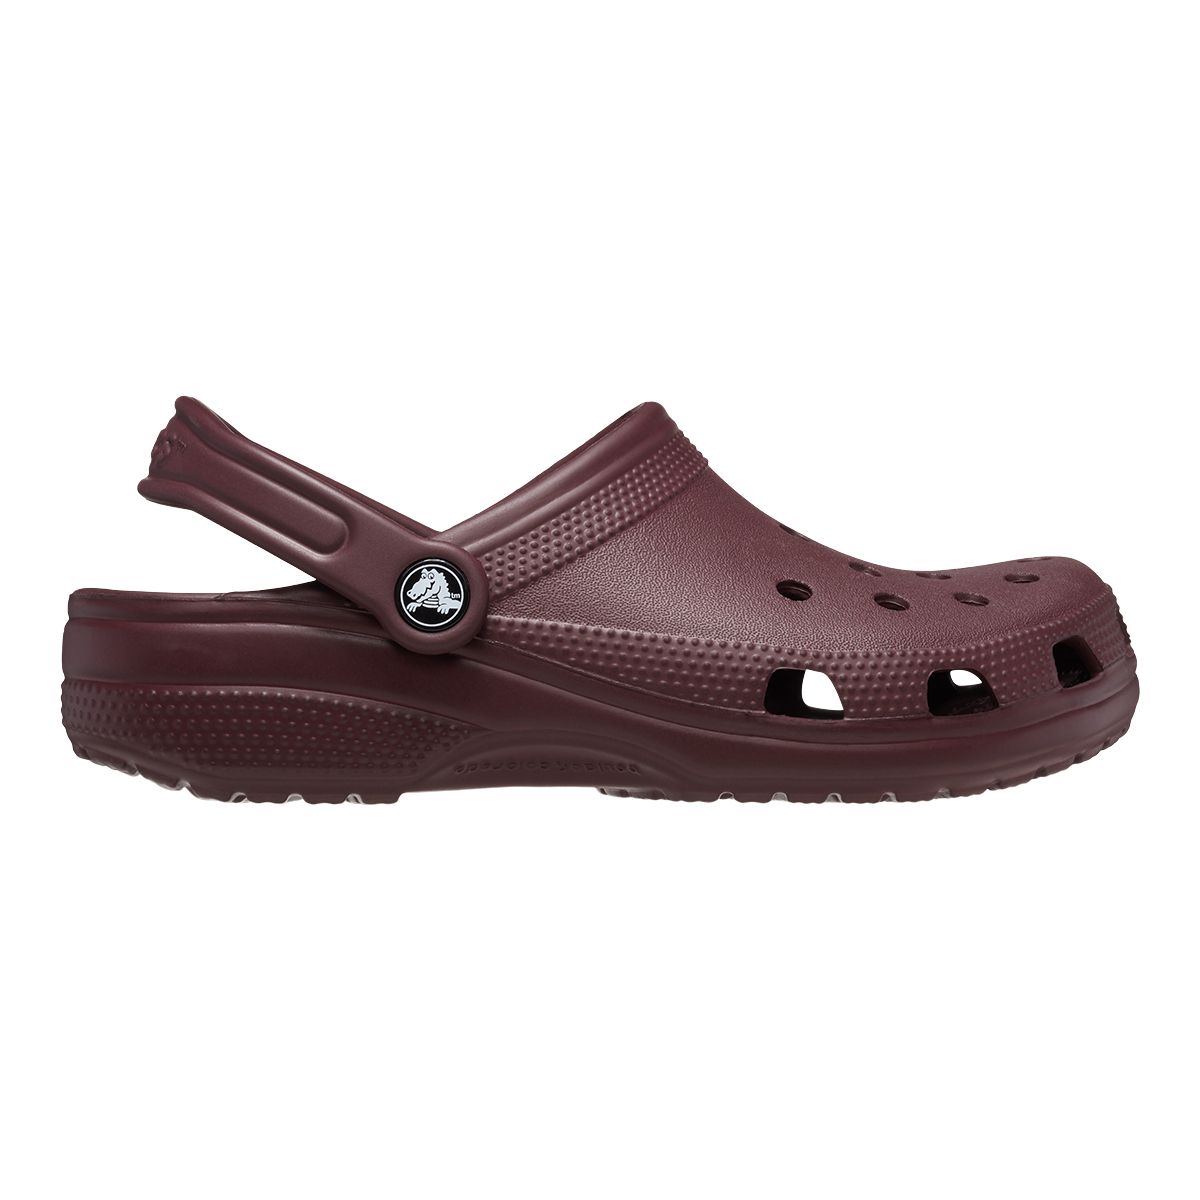 Crocs Women's Classic Clog Sandals